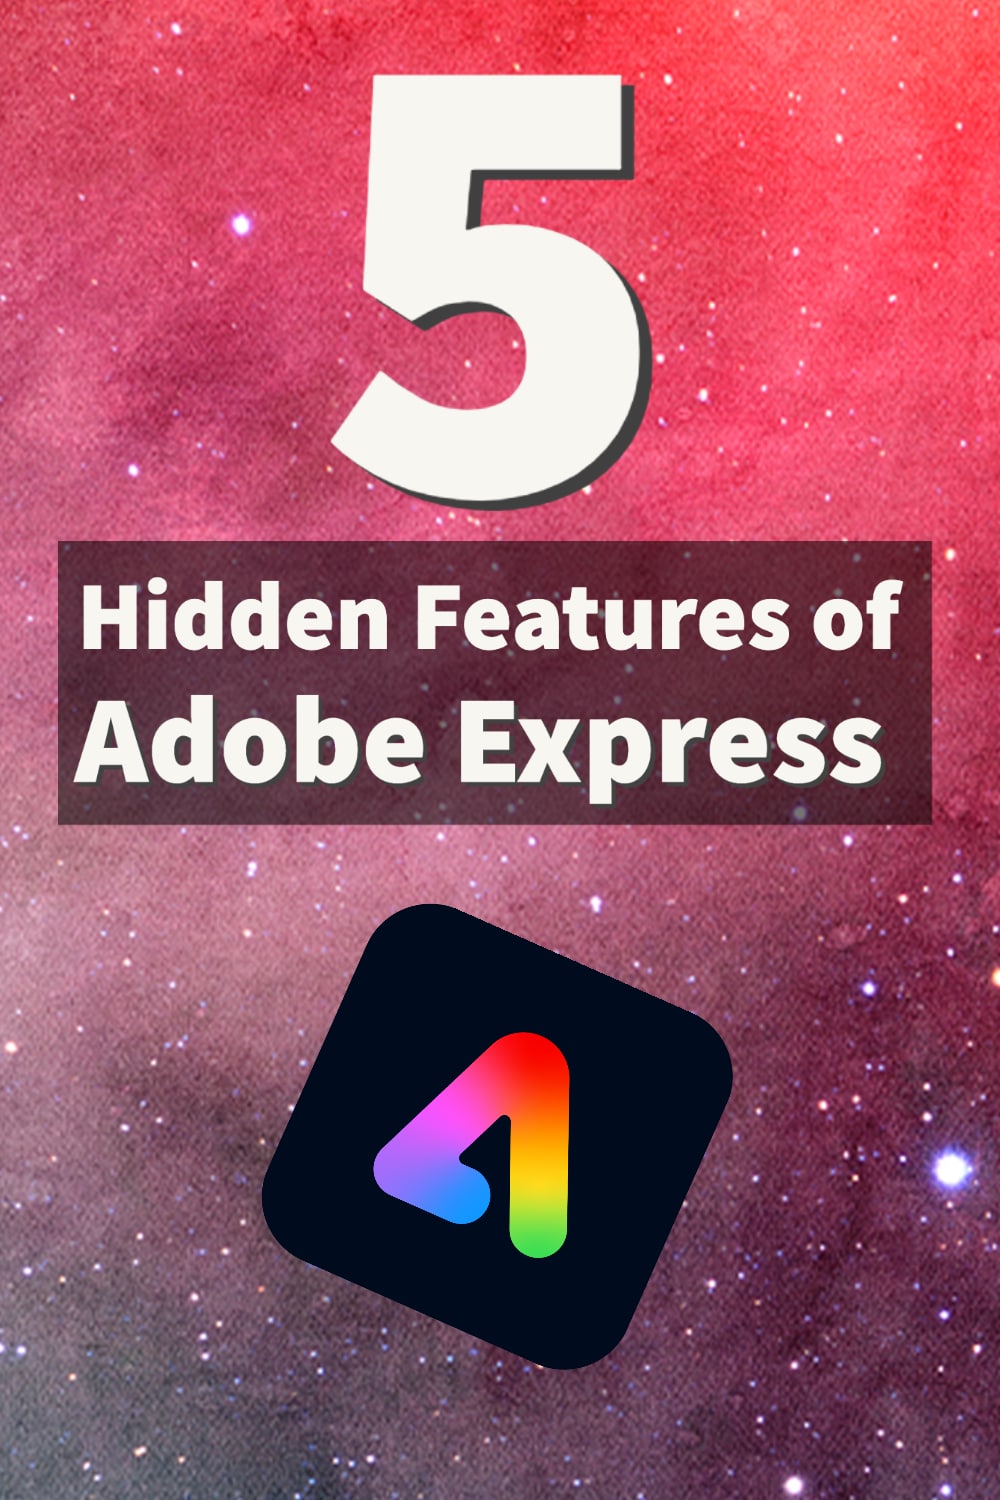 5 Hidden Features of Adobe Express